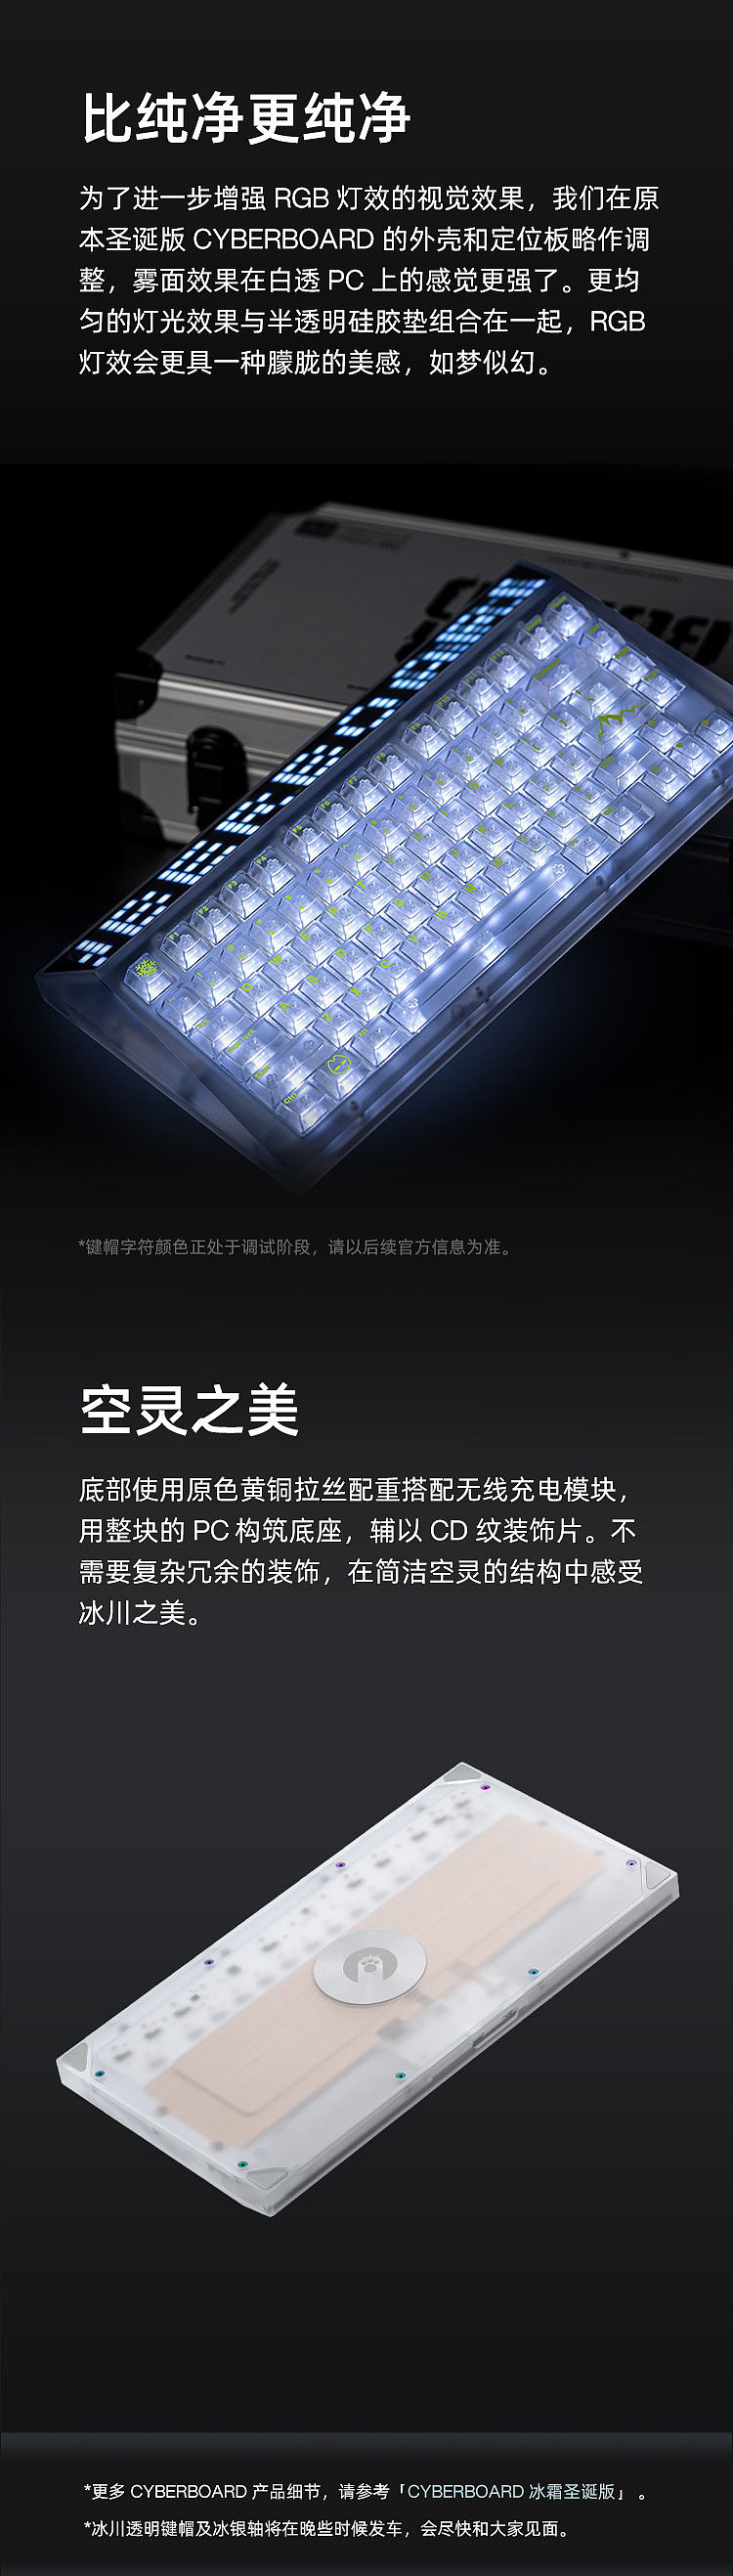 AngryMiao 发布 Cyberboard 冰川套装全透明键盘：3800 元 - 2